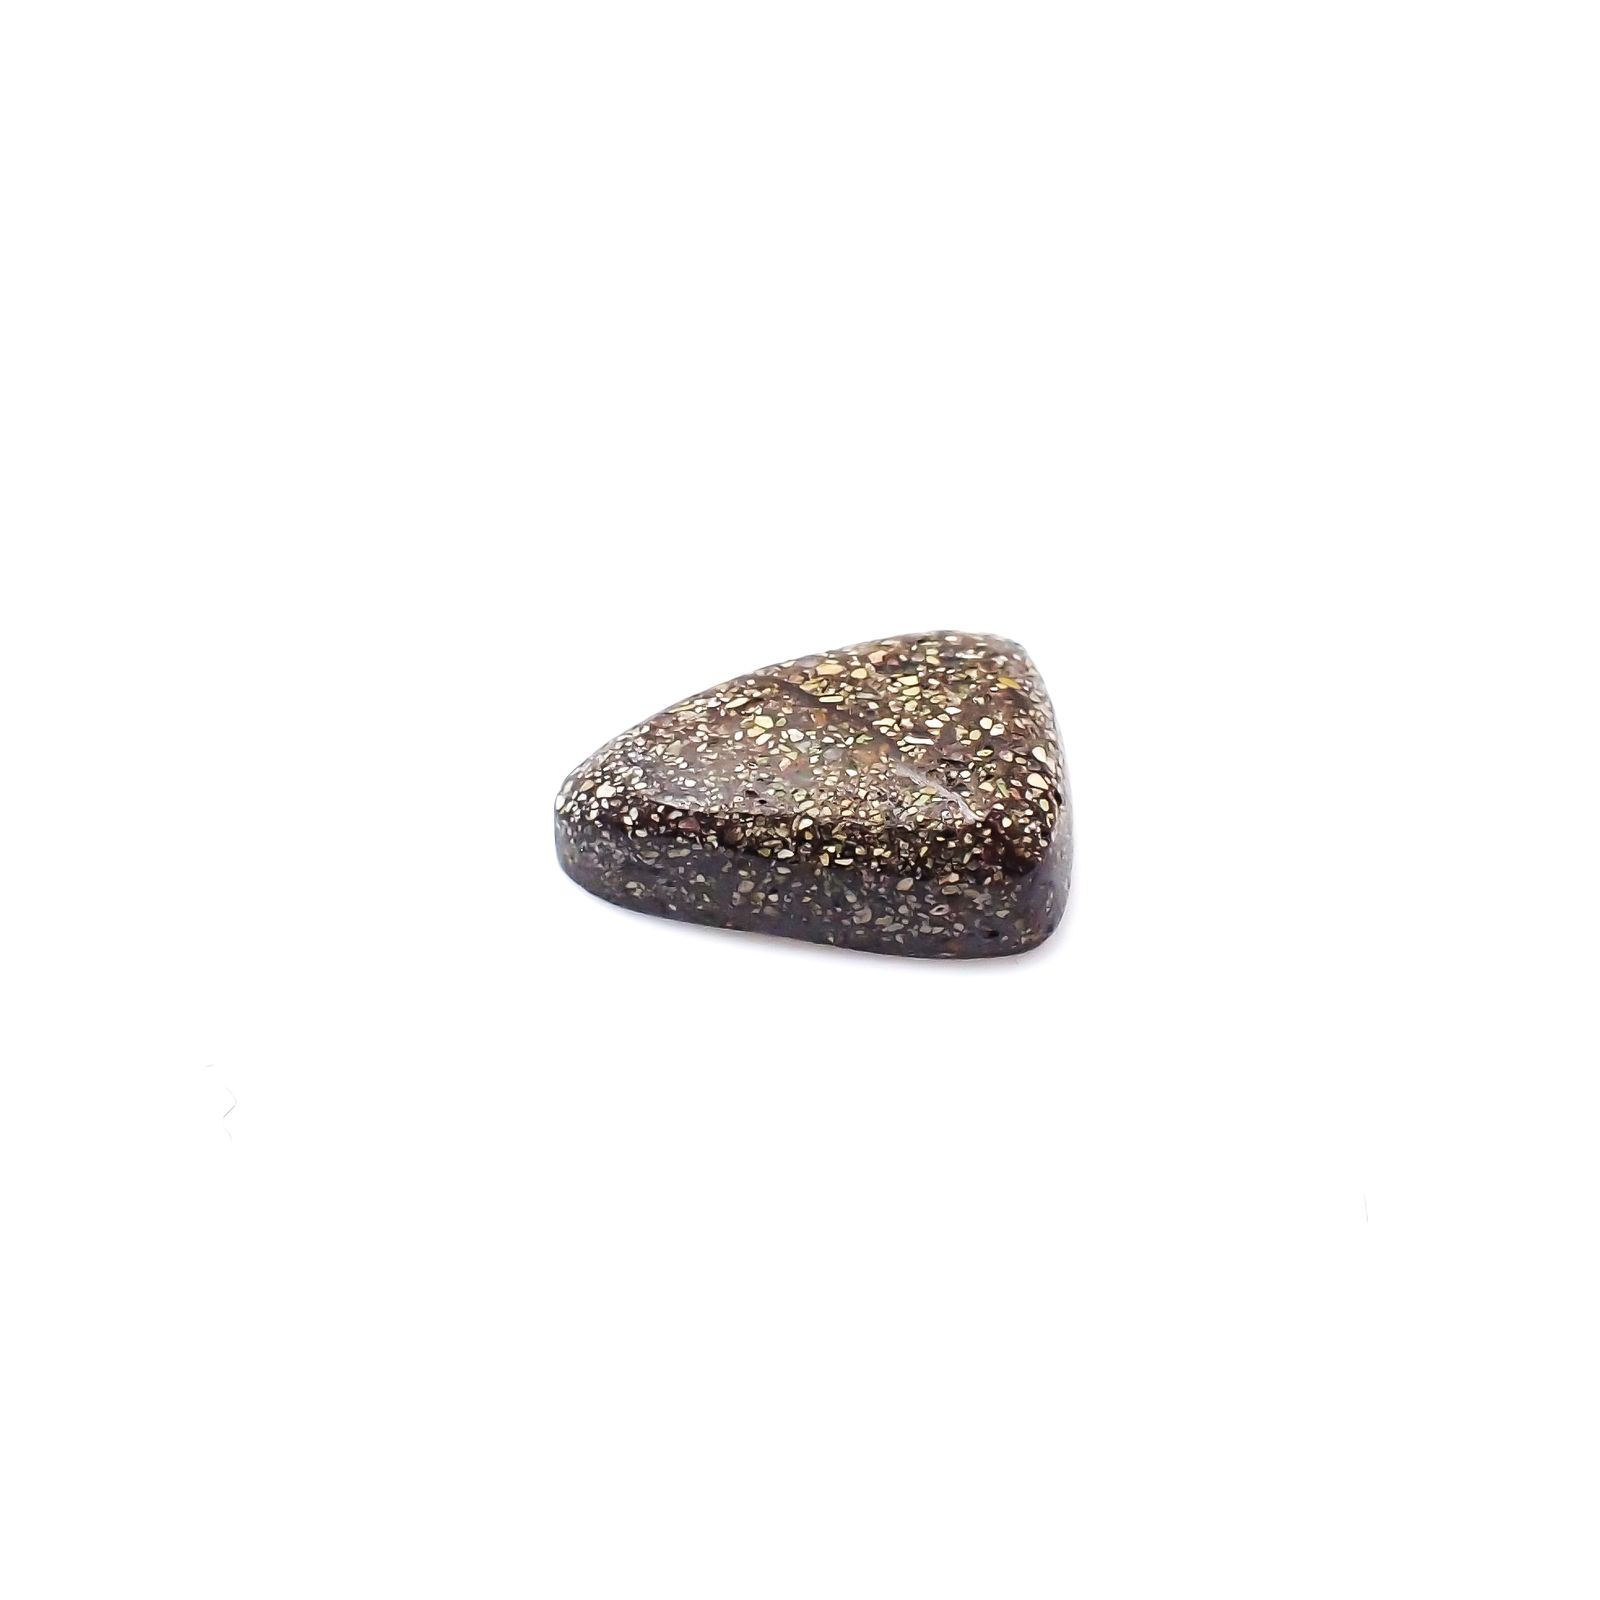 ボルダーオパール 原石磨き オーストラリア産 1.88ct[240226203]10.5x7.9mm前後 | TOP STONE(トップストーン)